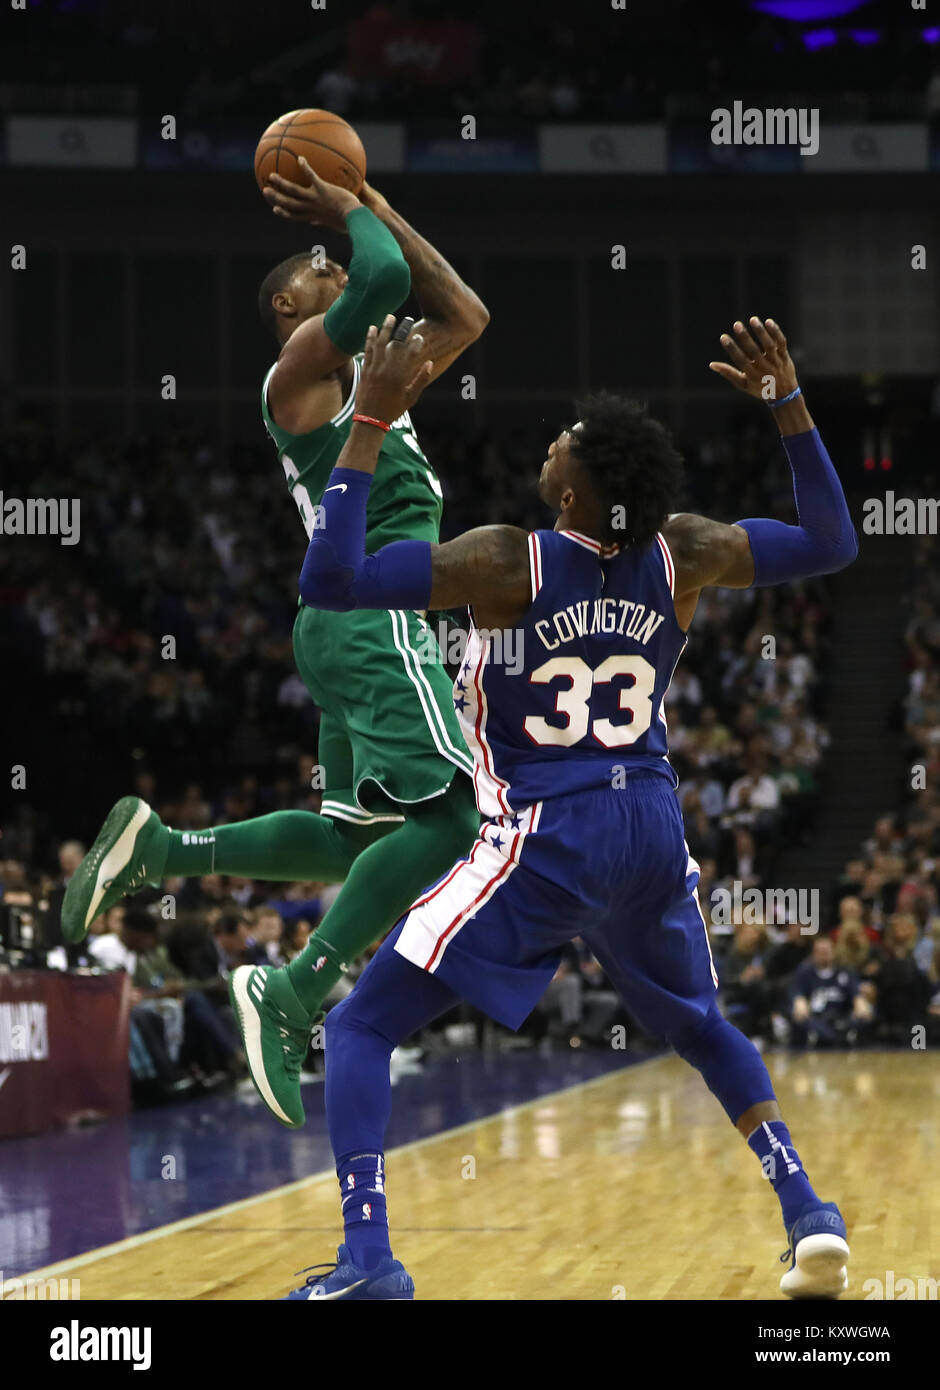 Boston Celtics' Marcus Smart germogli passato Philadelphia 76ers' Robert Covington durante l'NBA GIOCO DI LONDRA 2018 all'O2 Arena, Londra. Foto Stock